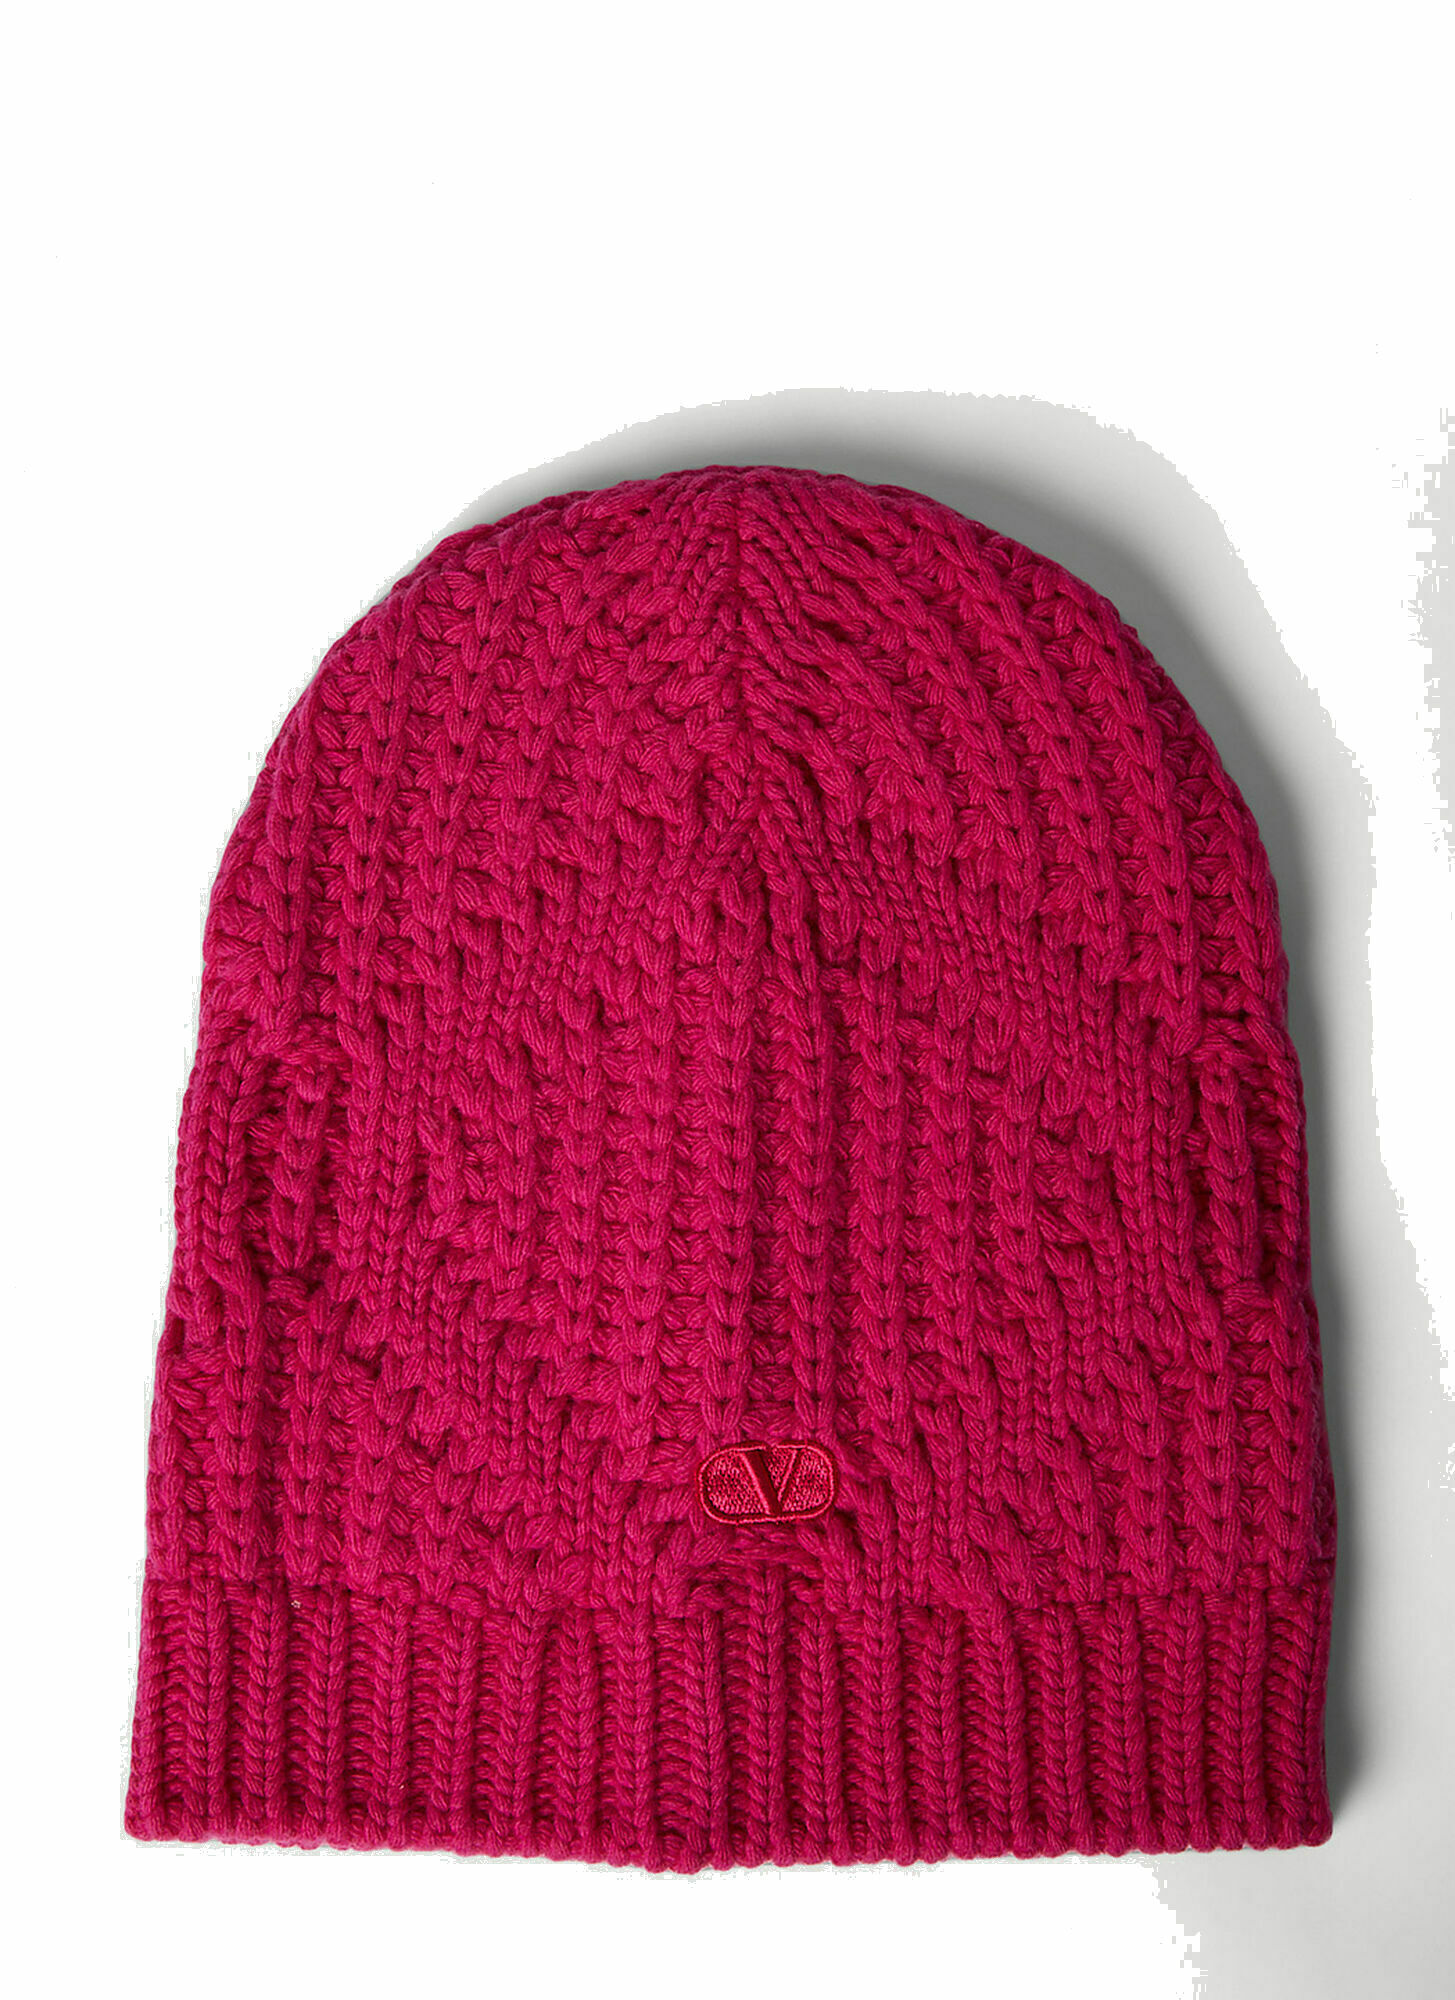 Photo: VLogo Beanie Hat in Pink